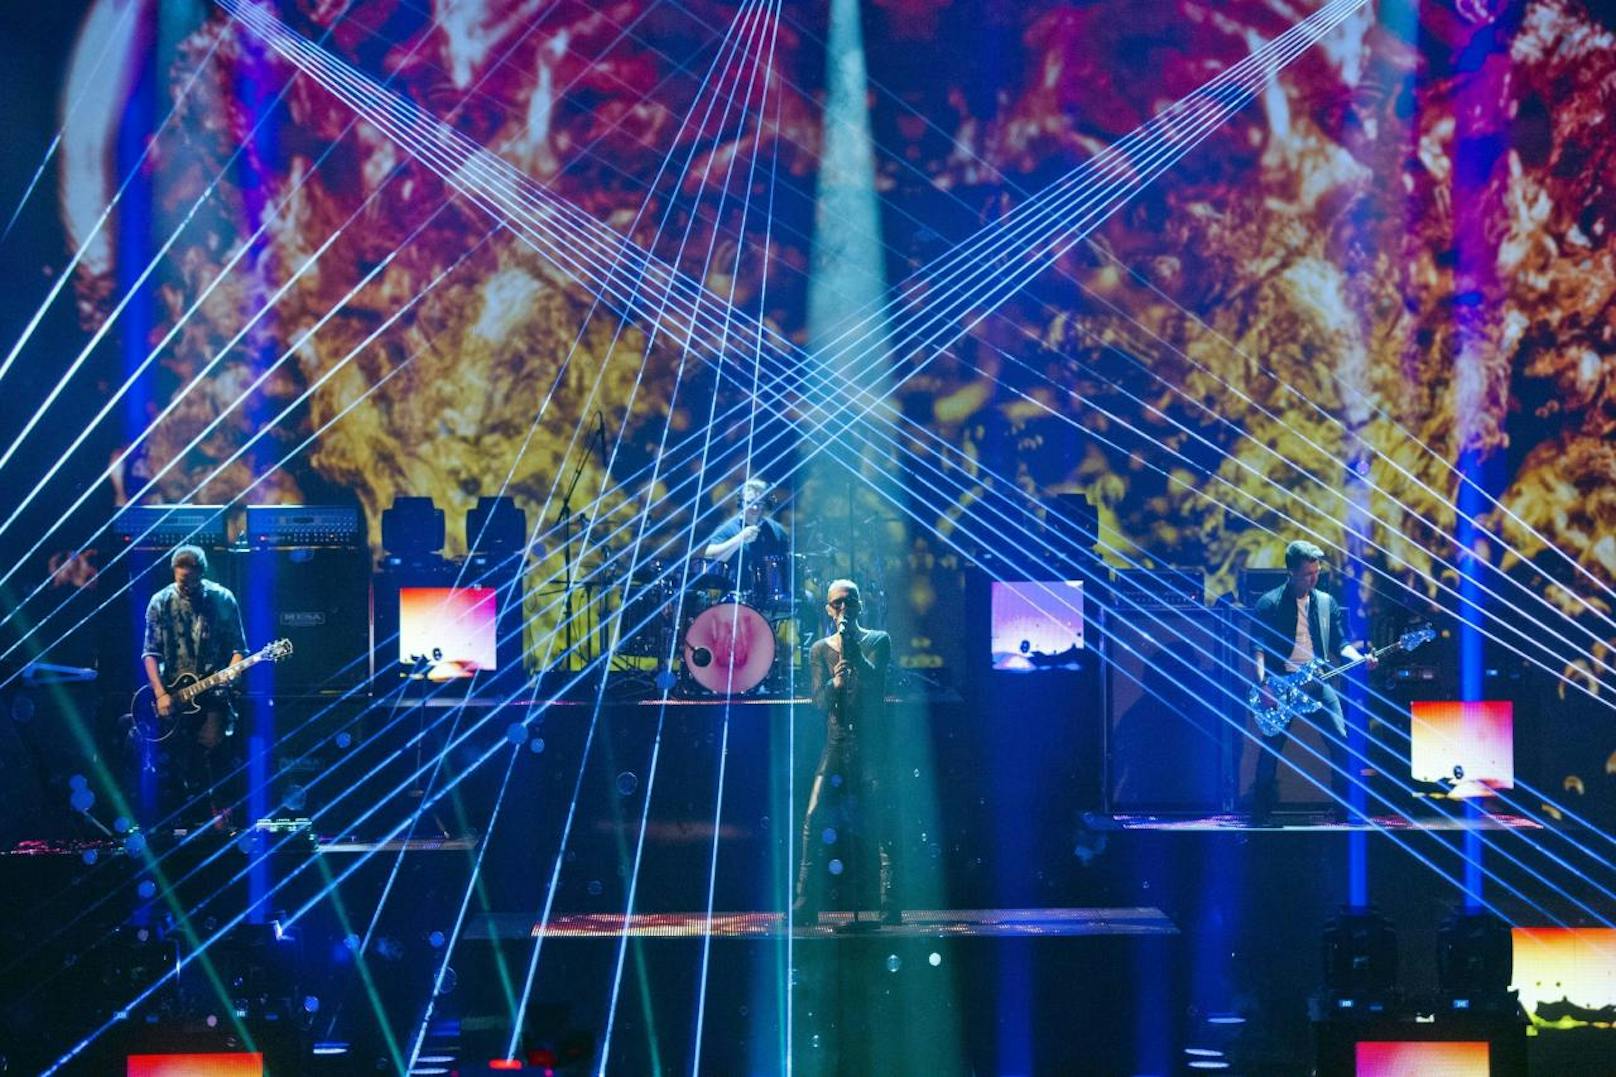 Tokio Hotel am 4. Oktober 2014 bei "Wetten dass....?" in Erfurt. 